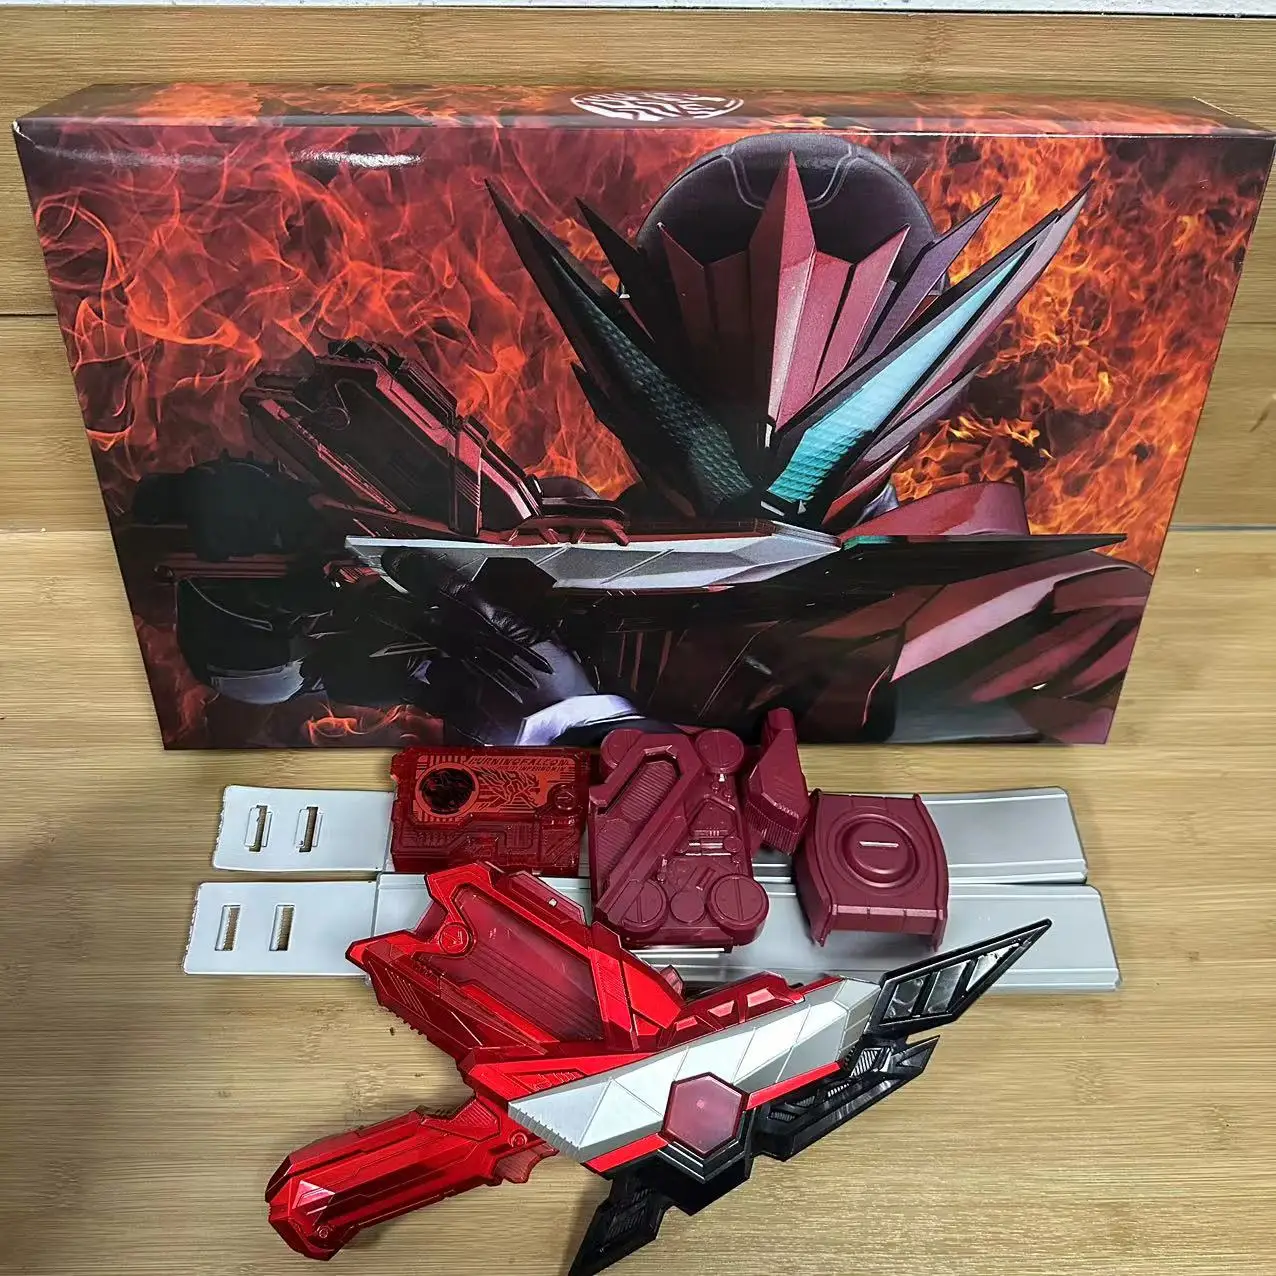 

Domestic DX Kamen Rider 01 Chopper Sublimator Burning Falcon key bgm synced can link boy gift